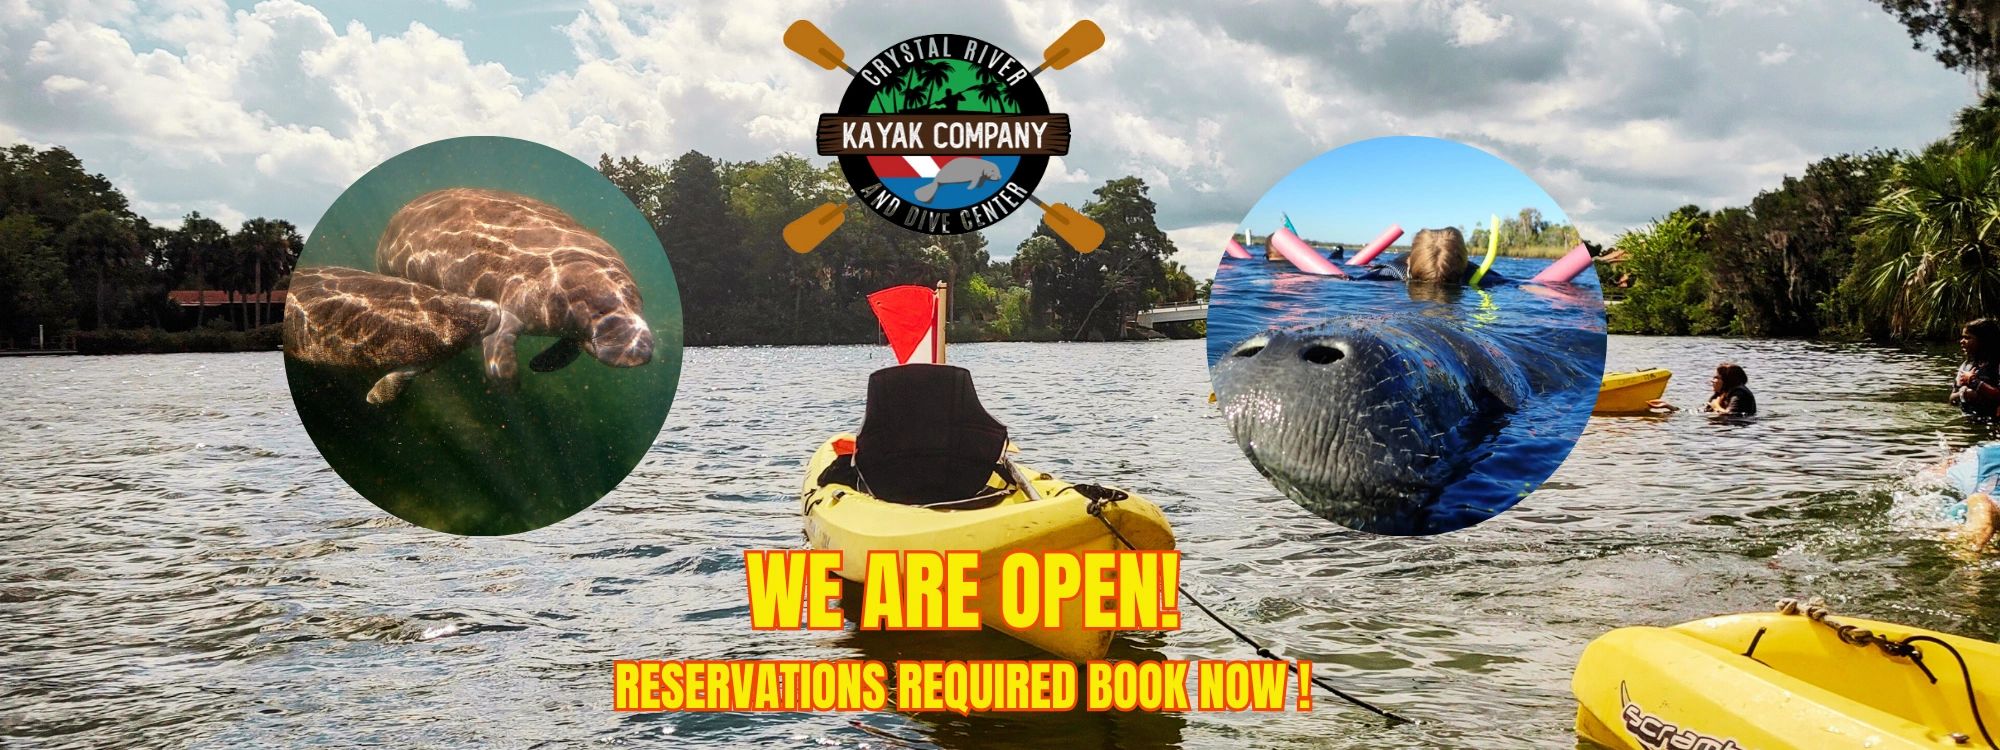 Kayaking in Crystal River